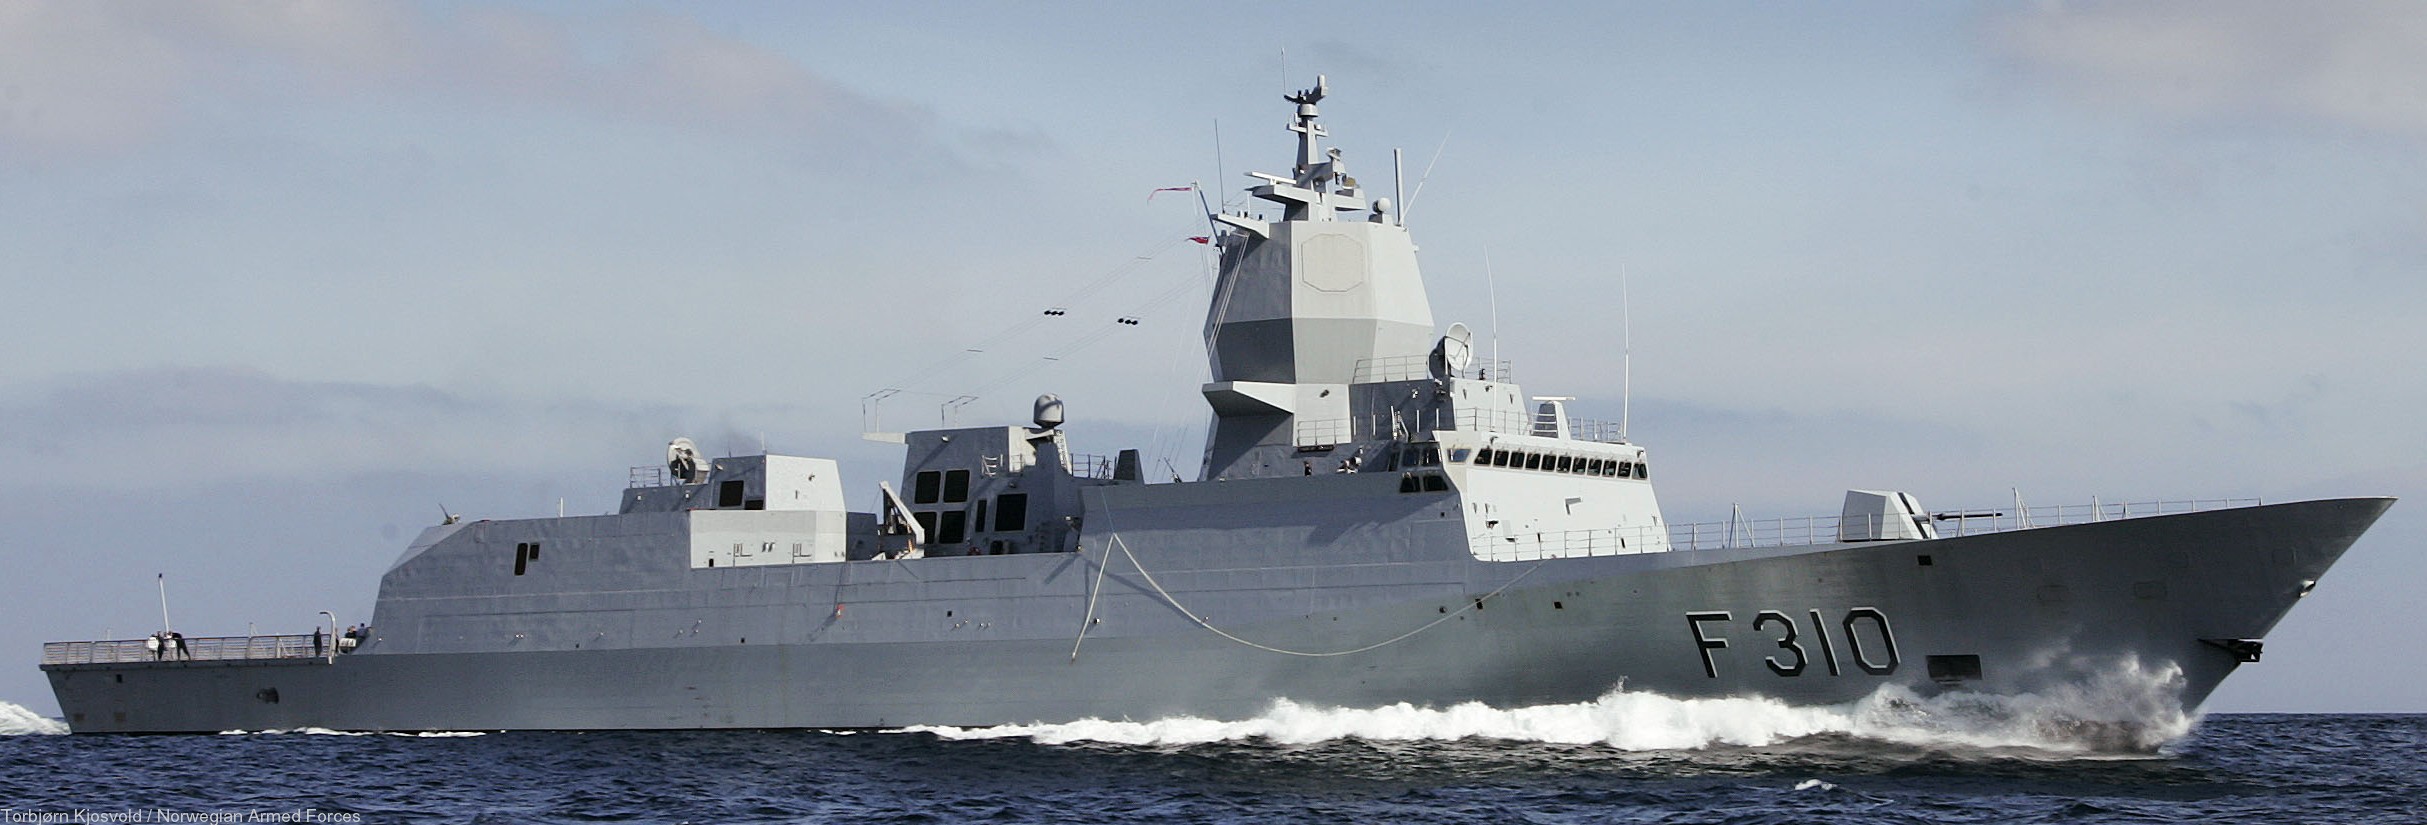 f-310 fridtjof nansen hnoms knm frigate royal norwegian navy sjoforsvaret 71